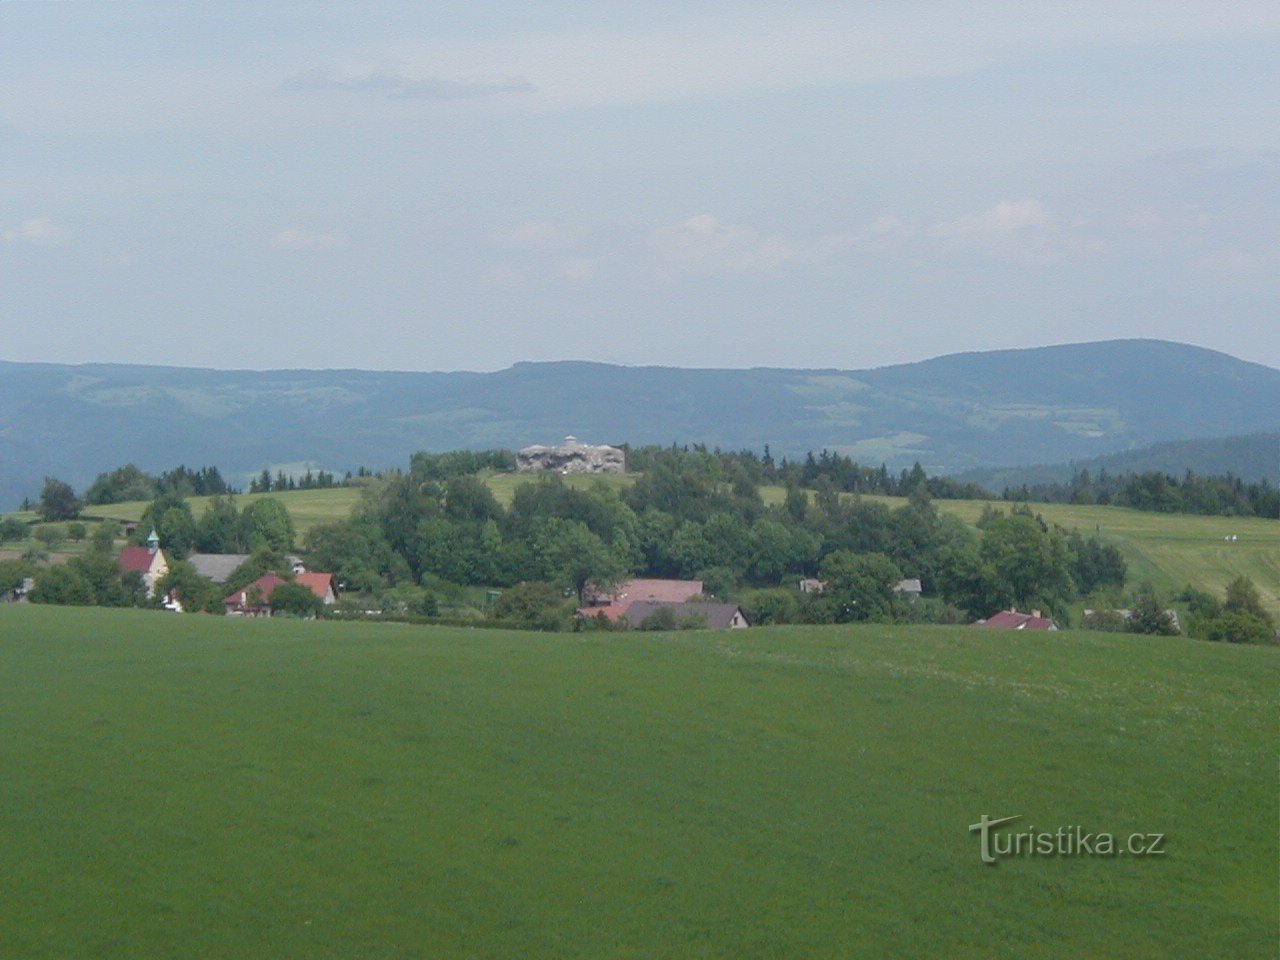 Wieża widokowa na Dobrošovie - widok na twierdzę Můstek